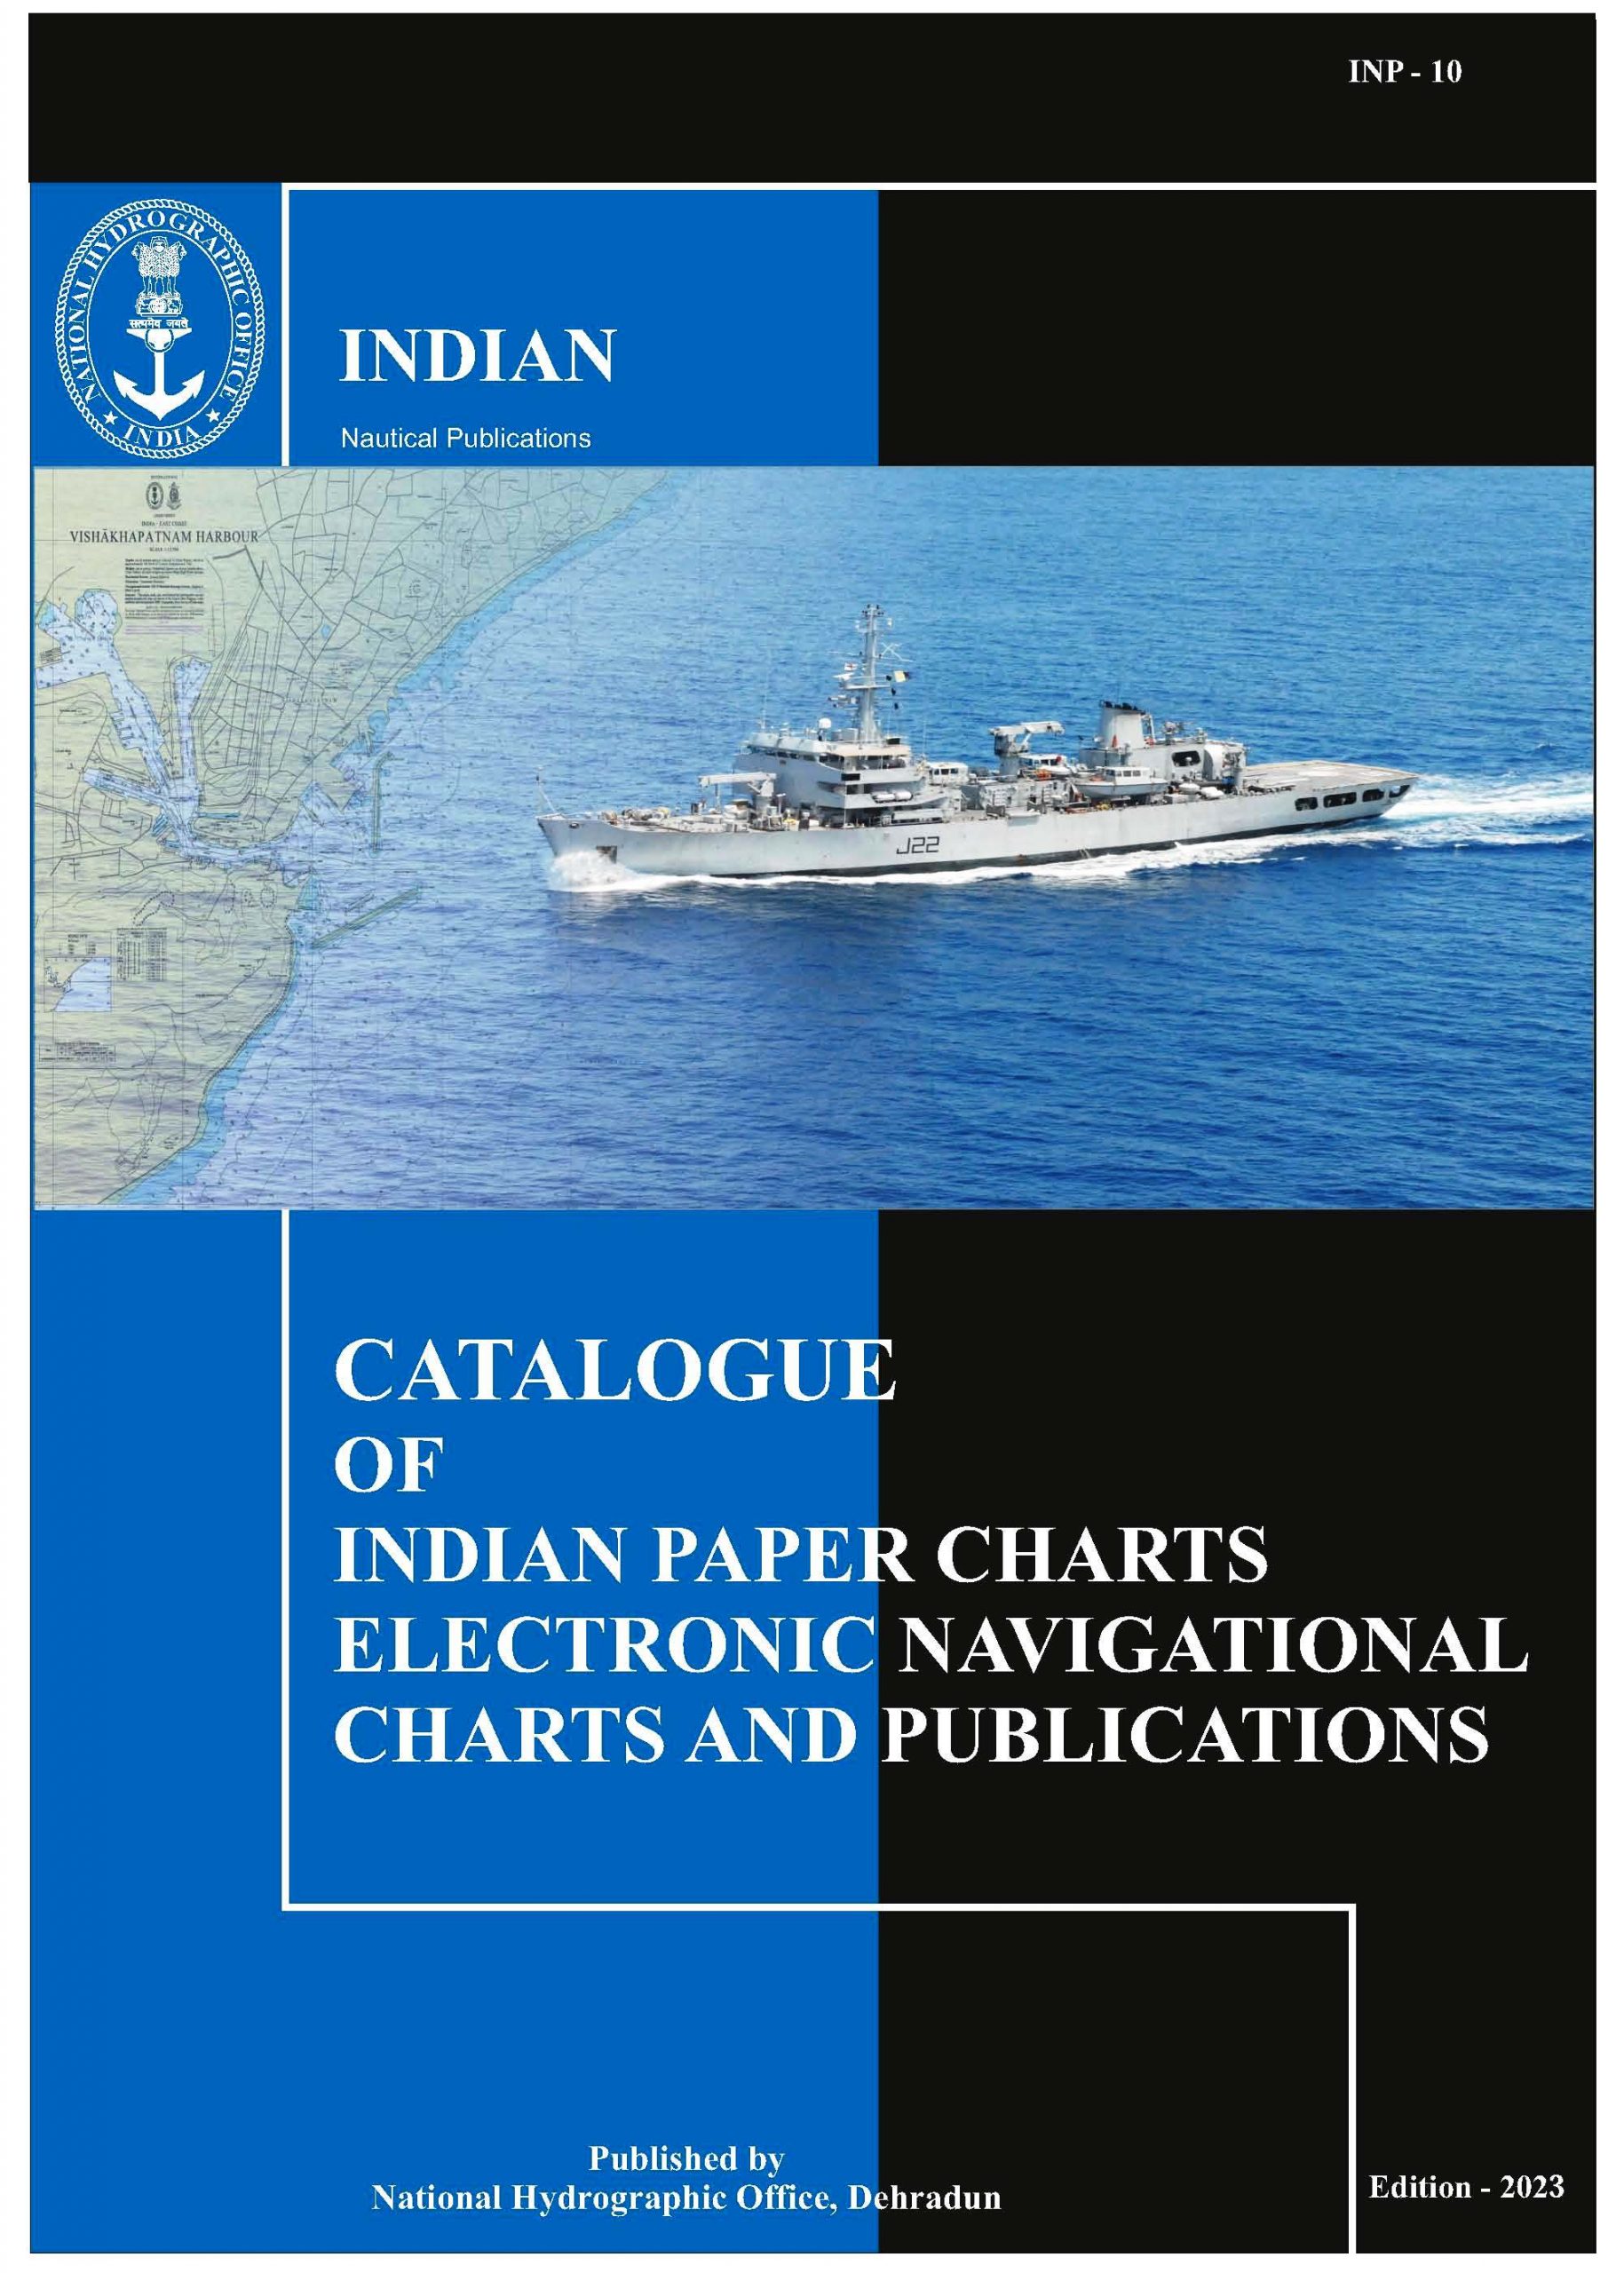 INP-10 (भारतीय चार्ट, सूची और प्रकाशन की सूची)